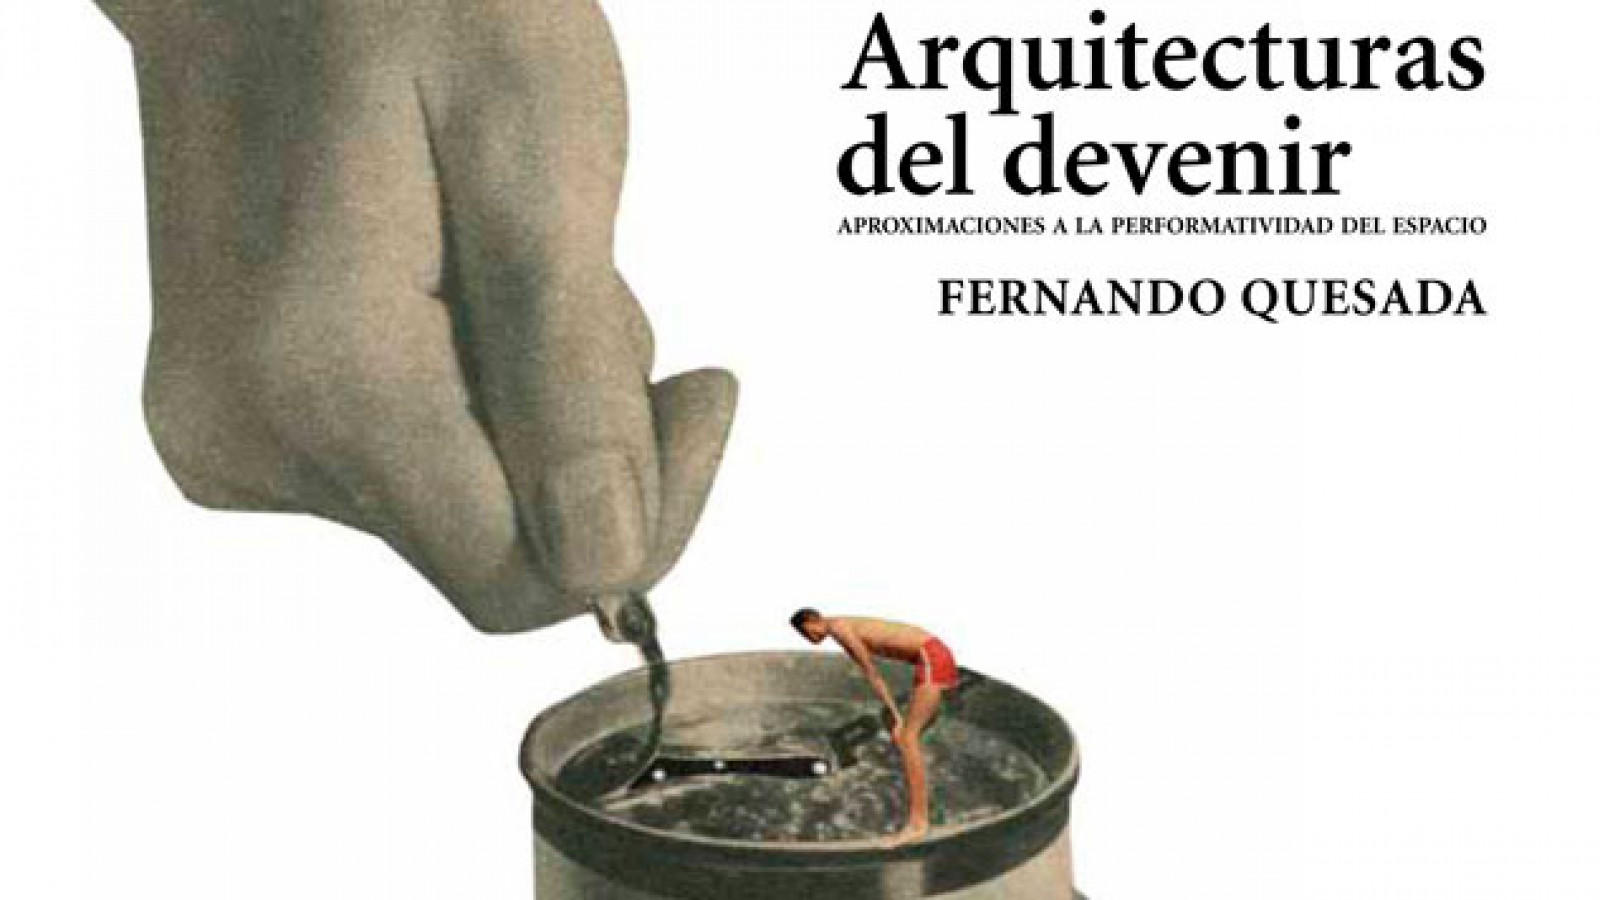 Presentación del libro “Arquitecturas del devenir. Aproximaciones a la performatividad del espacio”, de Fernando Quesada